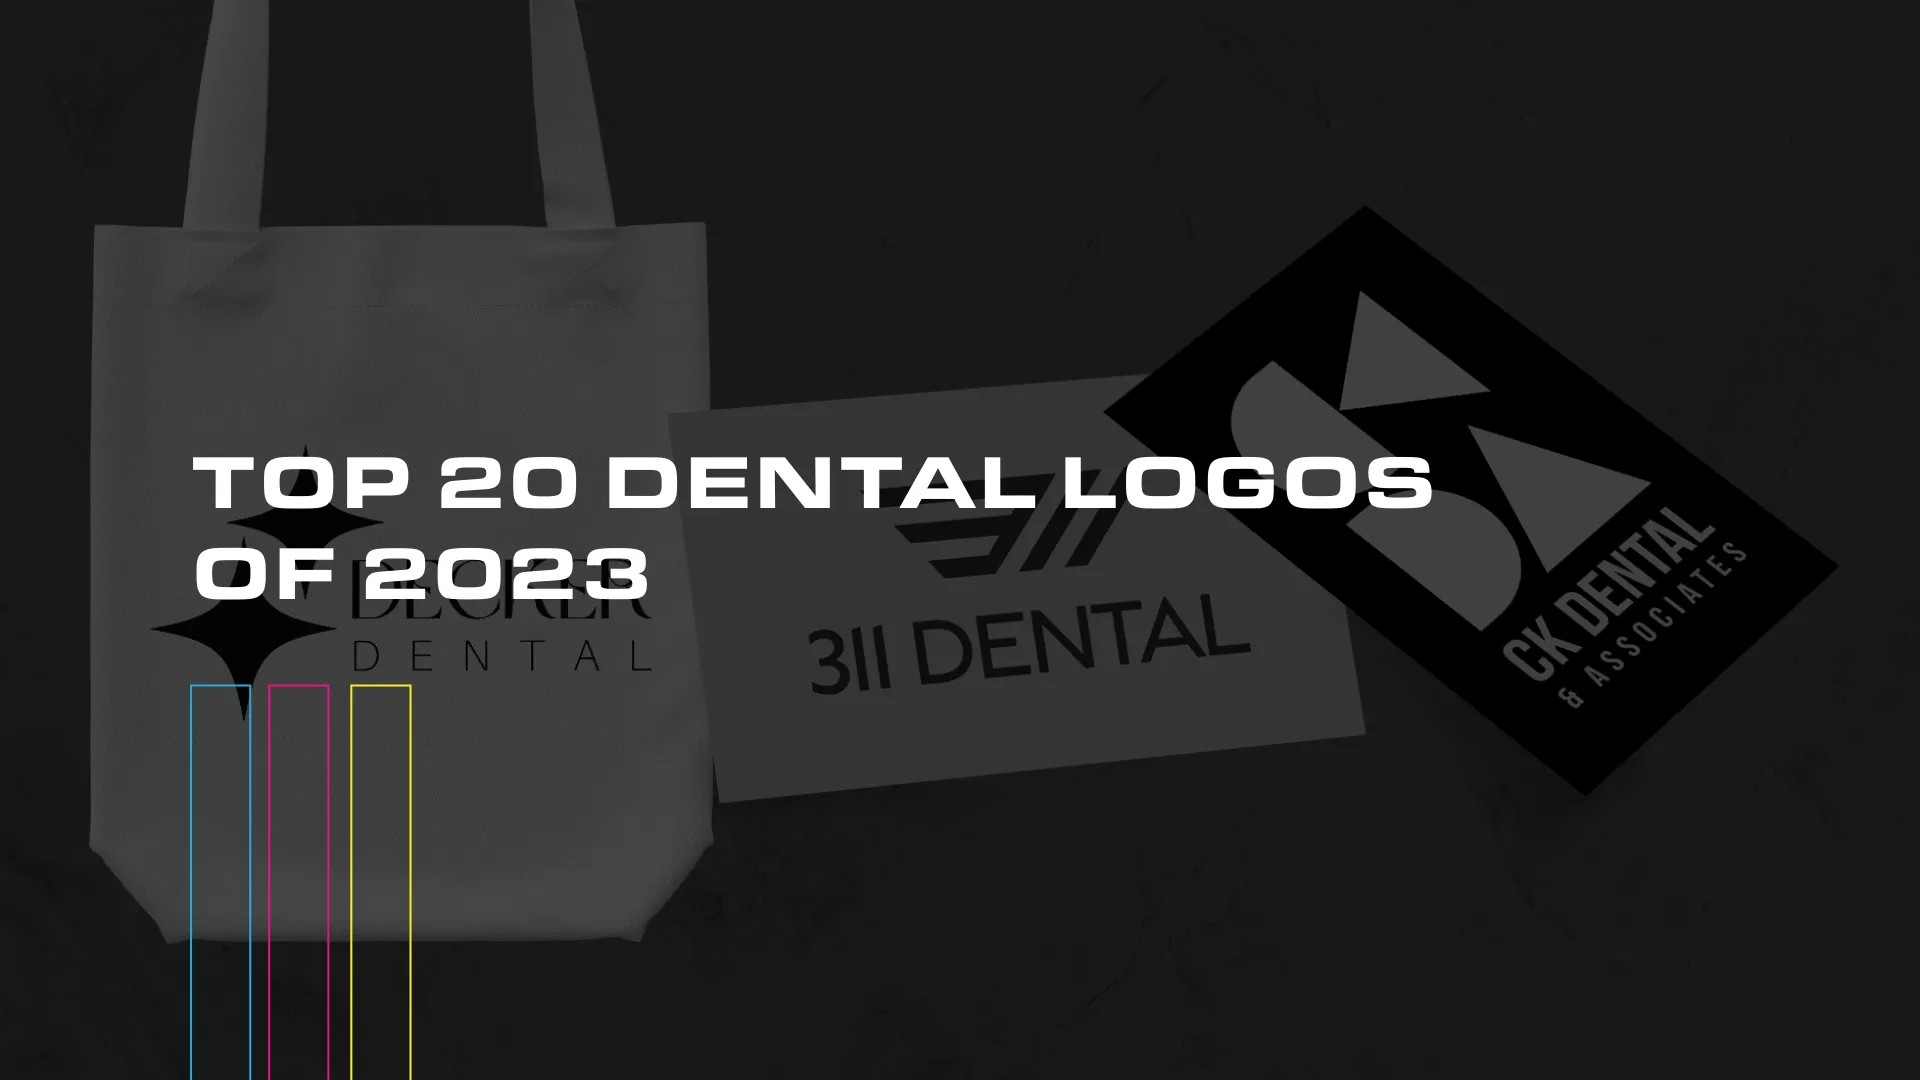 Top 20 Dental Logos